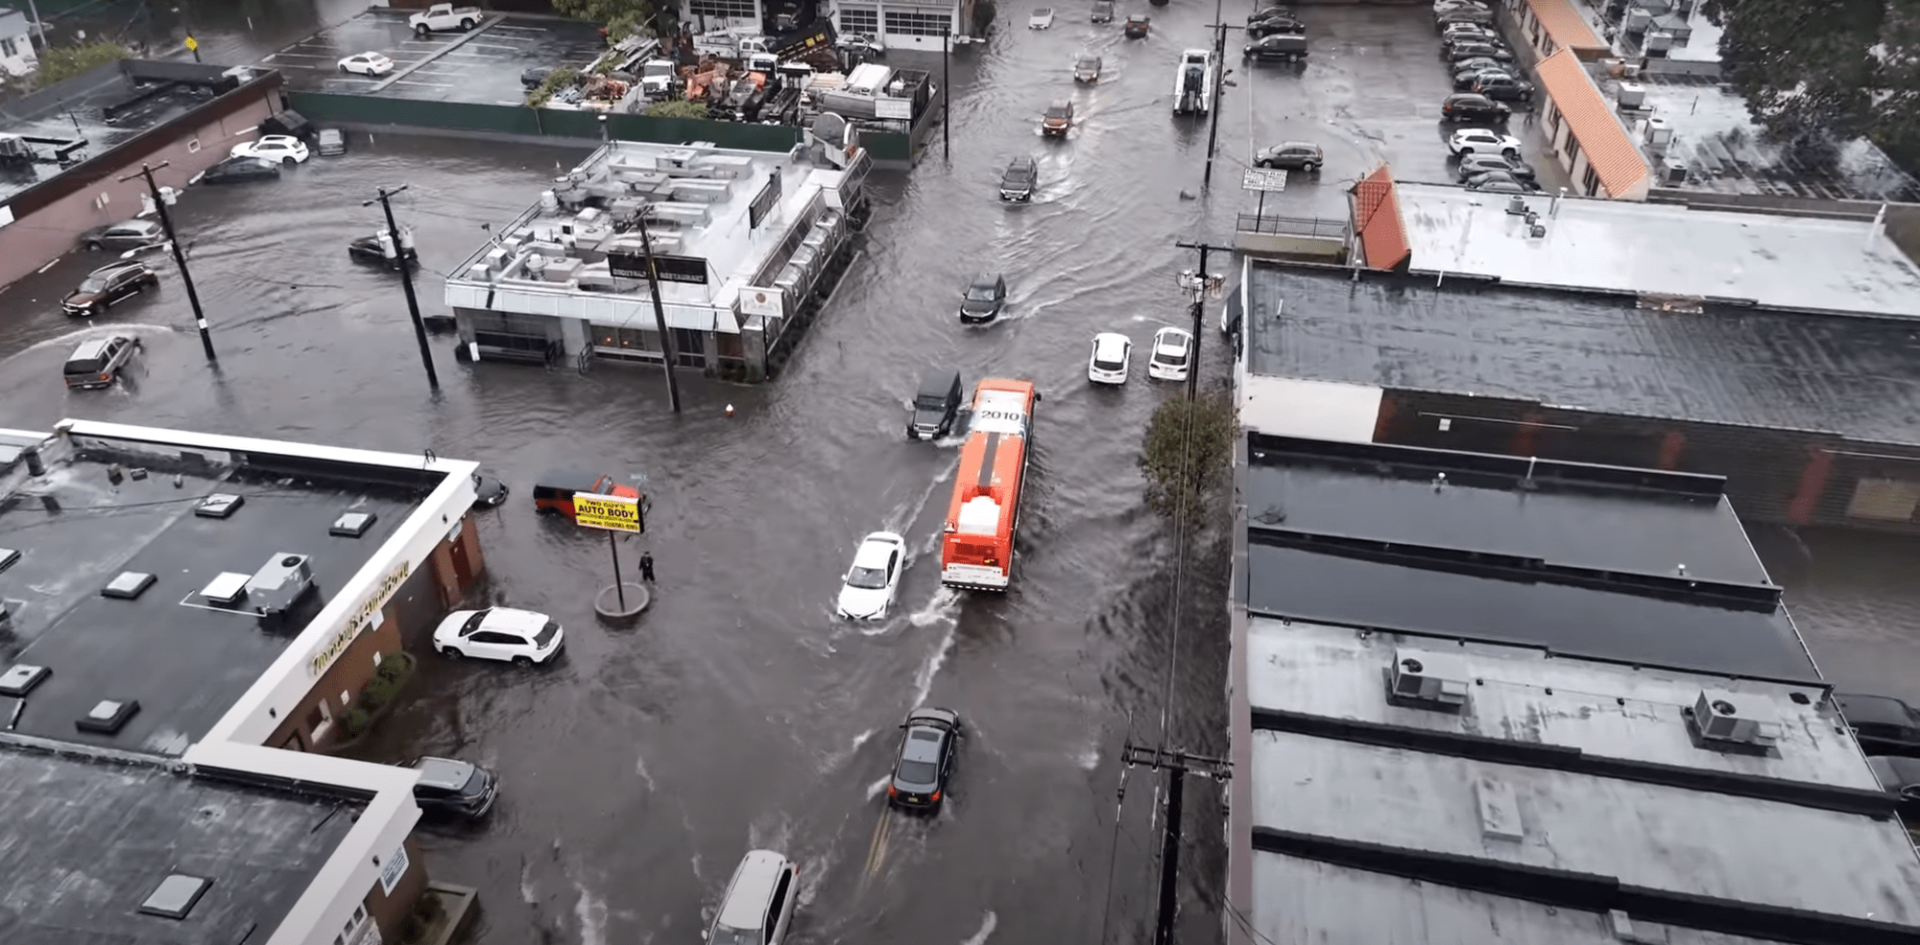 Opady w Nowym Jorku były nader intensywne – w ciągu tylko 3 godz. spadło tyle deszczu, ile zazwyczaj nowojorczycy doświadczają w ciągu miesiąca źródło: WXChasing, New York Flooding Chaos – Brooklyn – Long Island – Raw 4k with Drone, https://www.youtube.com/watch?v=ZjY_uB7p5Hw